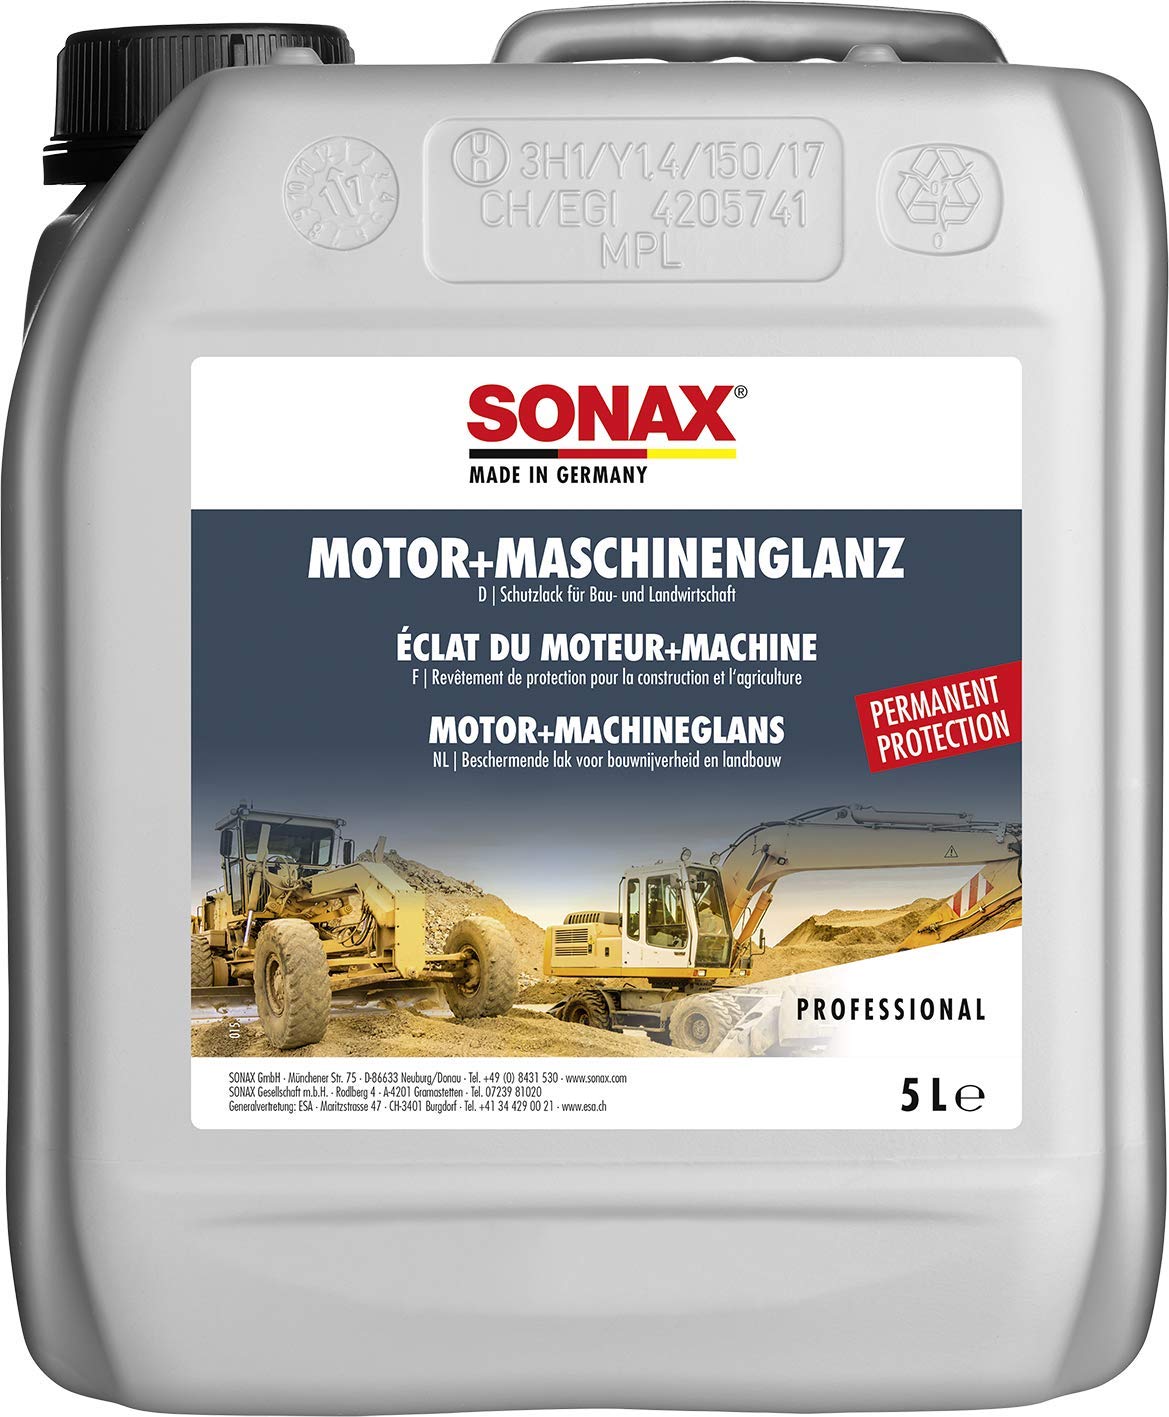 SONAX Motor+MaschinenGlanz (5 Liter) Schutzlack & Versiegelung für Bau- und Landwirtschaft, Art-Nr. 03305000 von SONAX